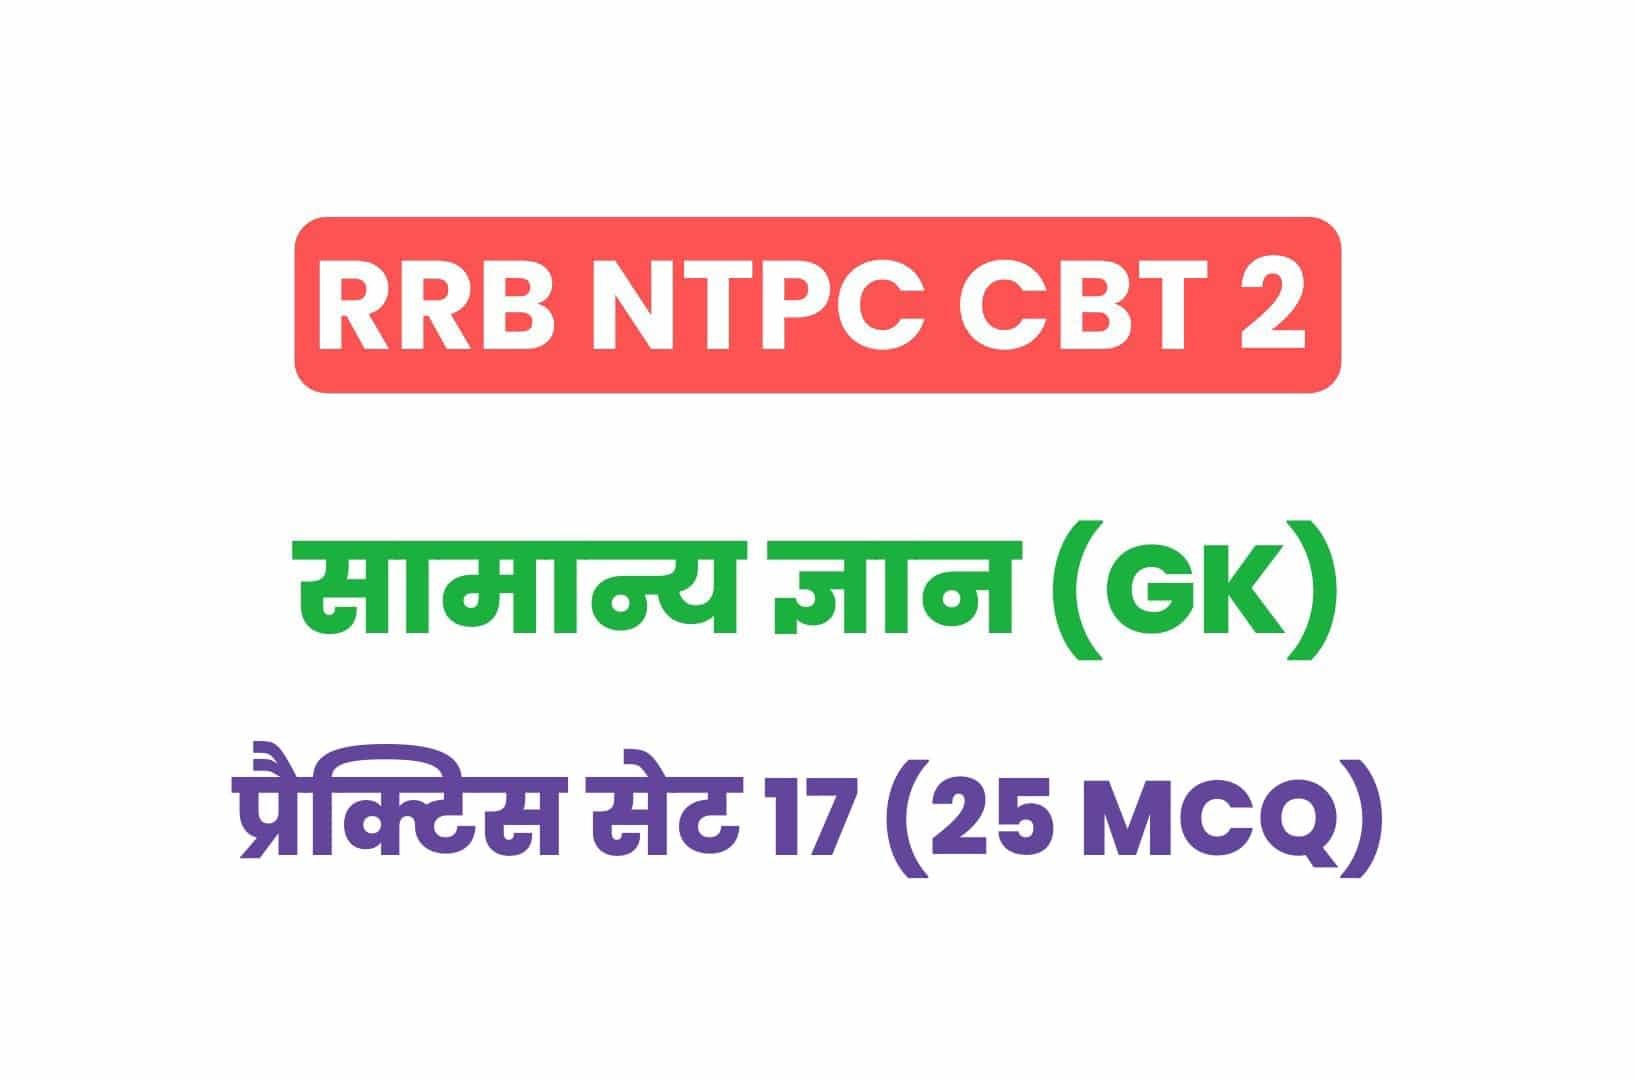 RRB NTPC CBT 2 GK प्रैक्टिस सेट 17: परीक्षा में पूछे गये सामान्य ज्ञान के 25 महत्वपूर्ण MCQ, देखें